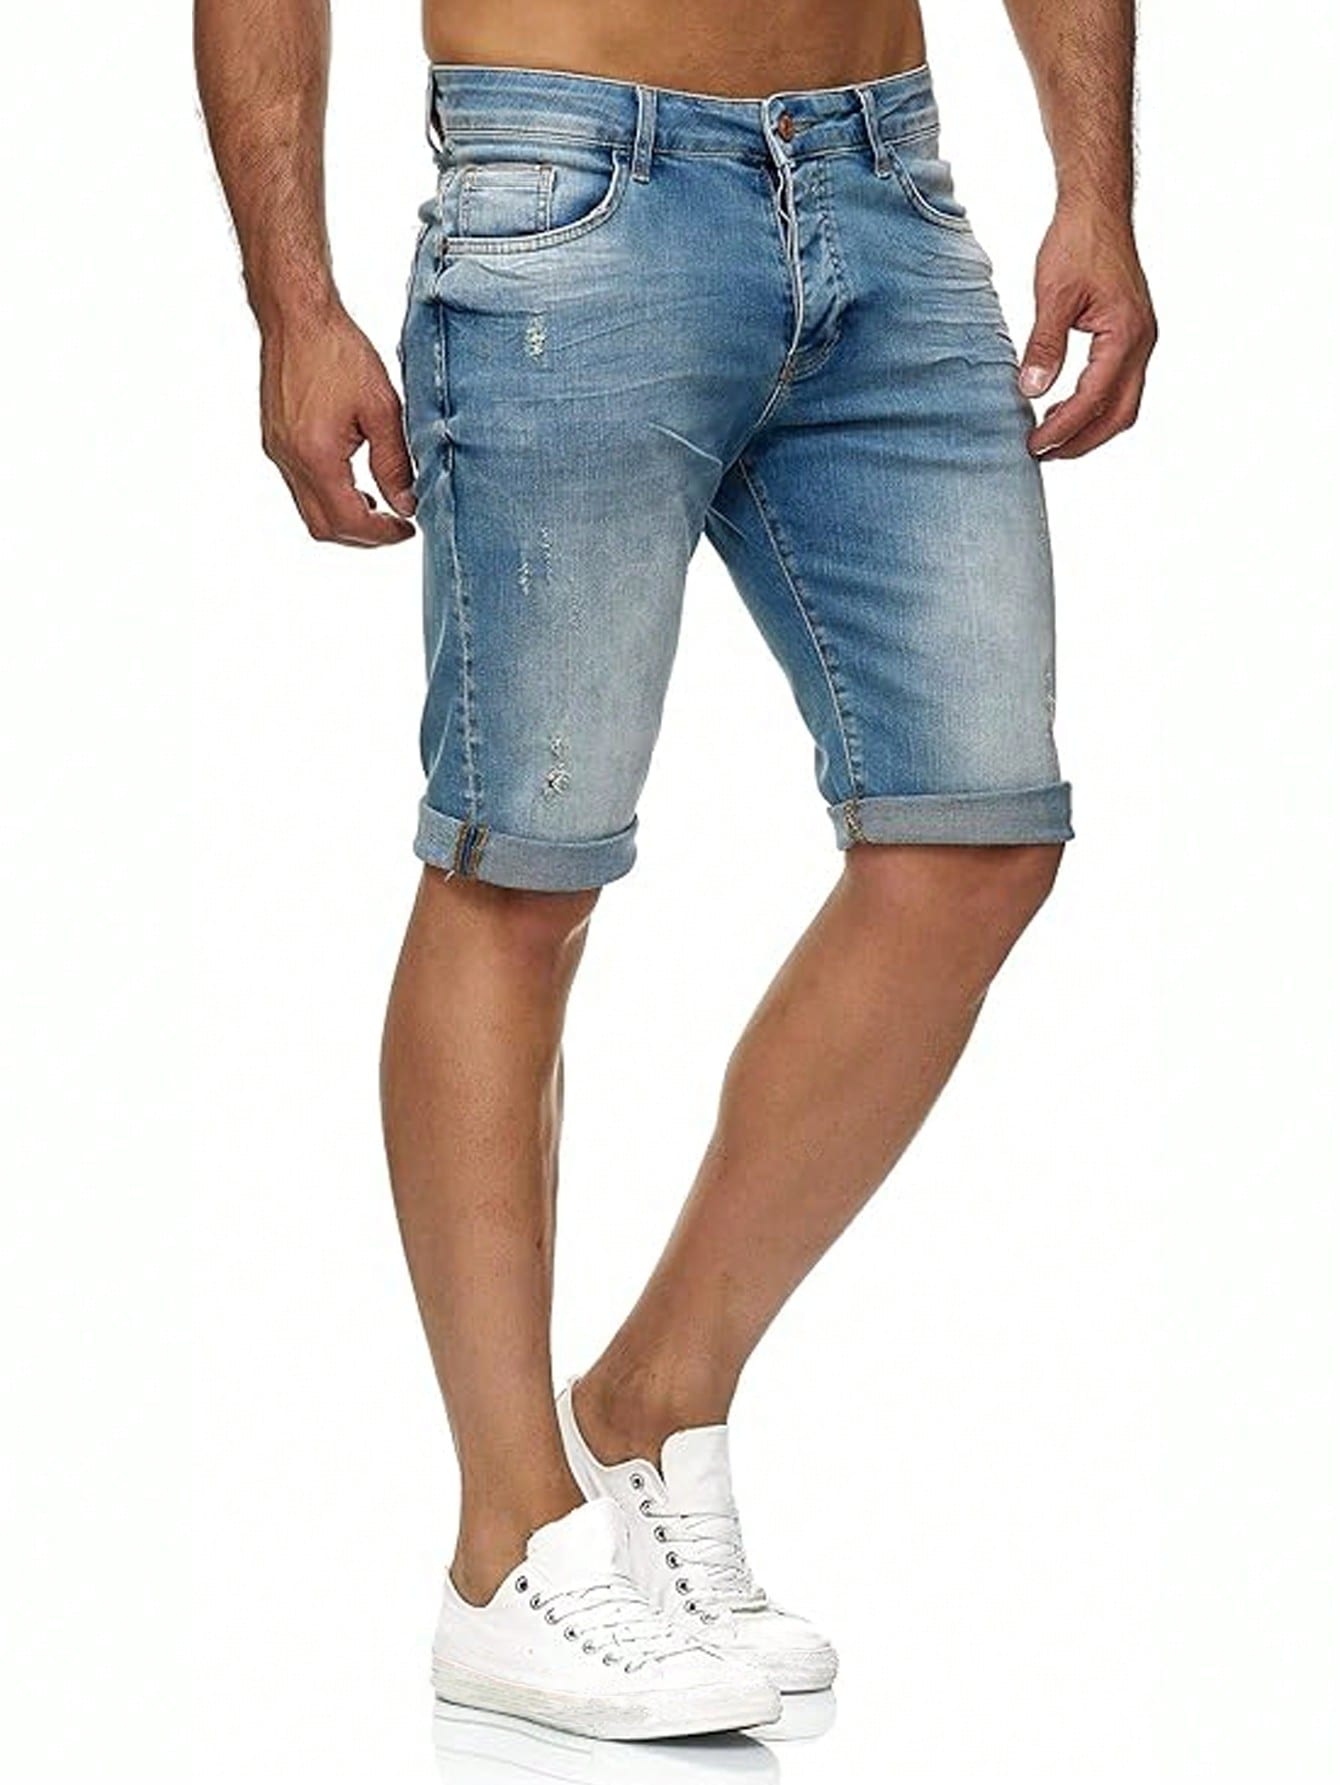 Мужские джинсовые шорты Manfinity Homme, синий